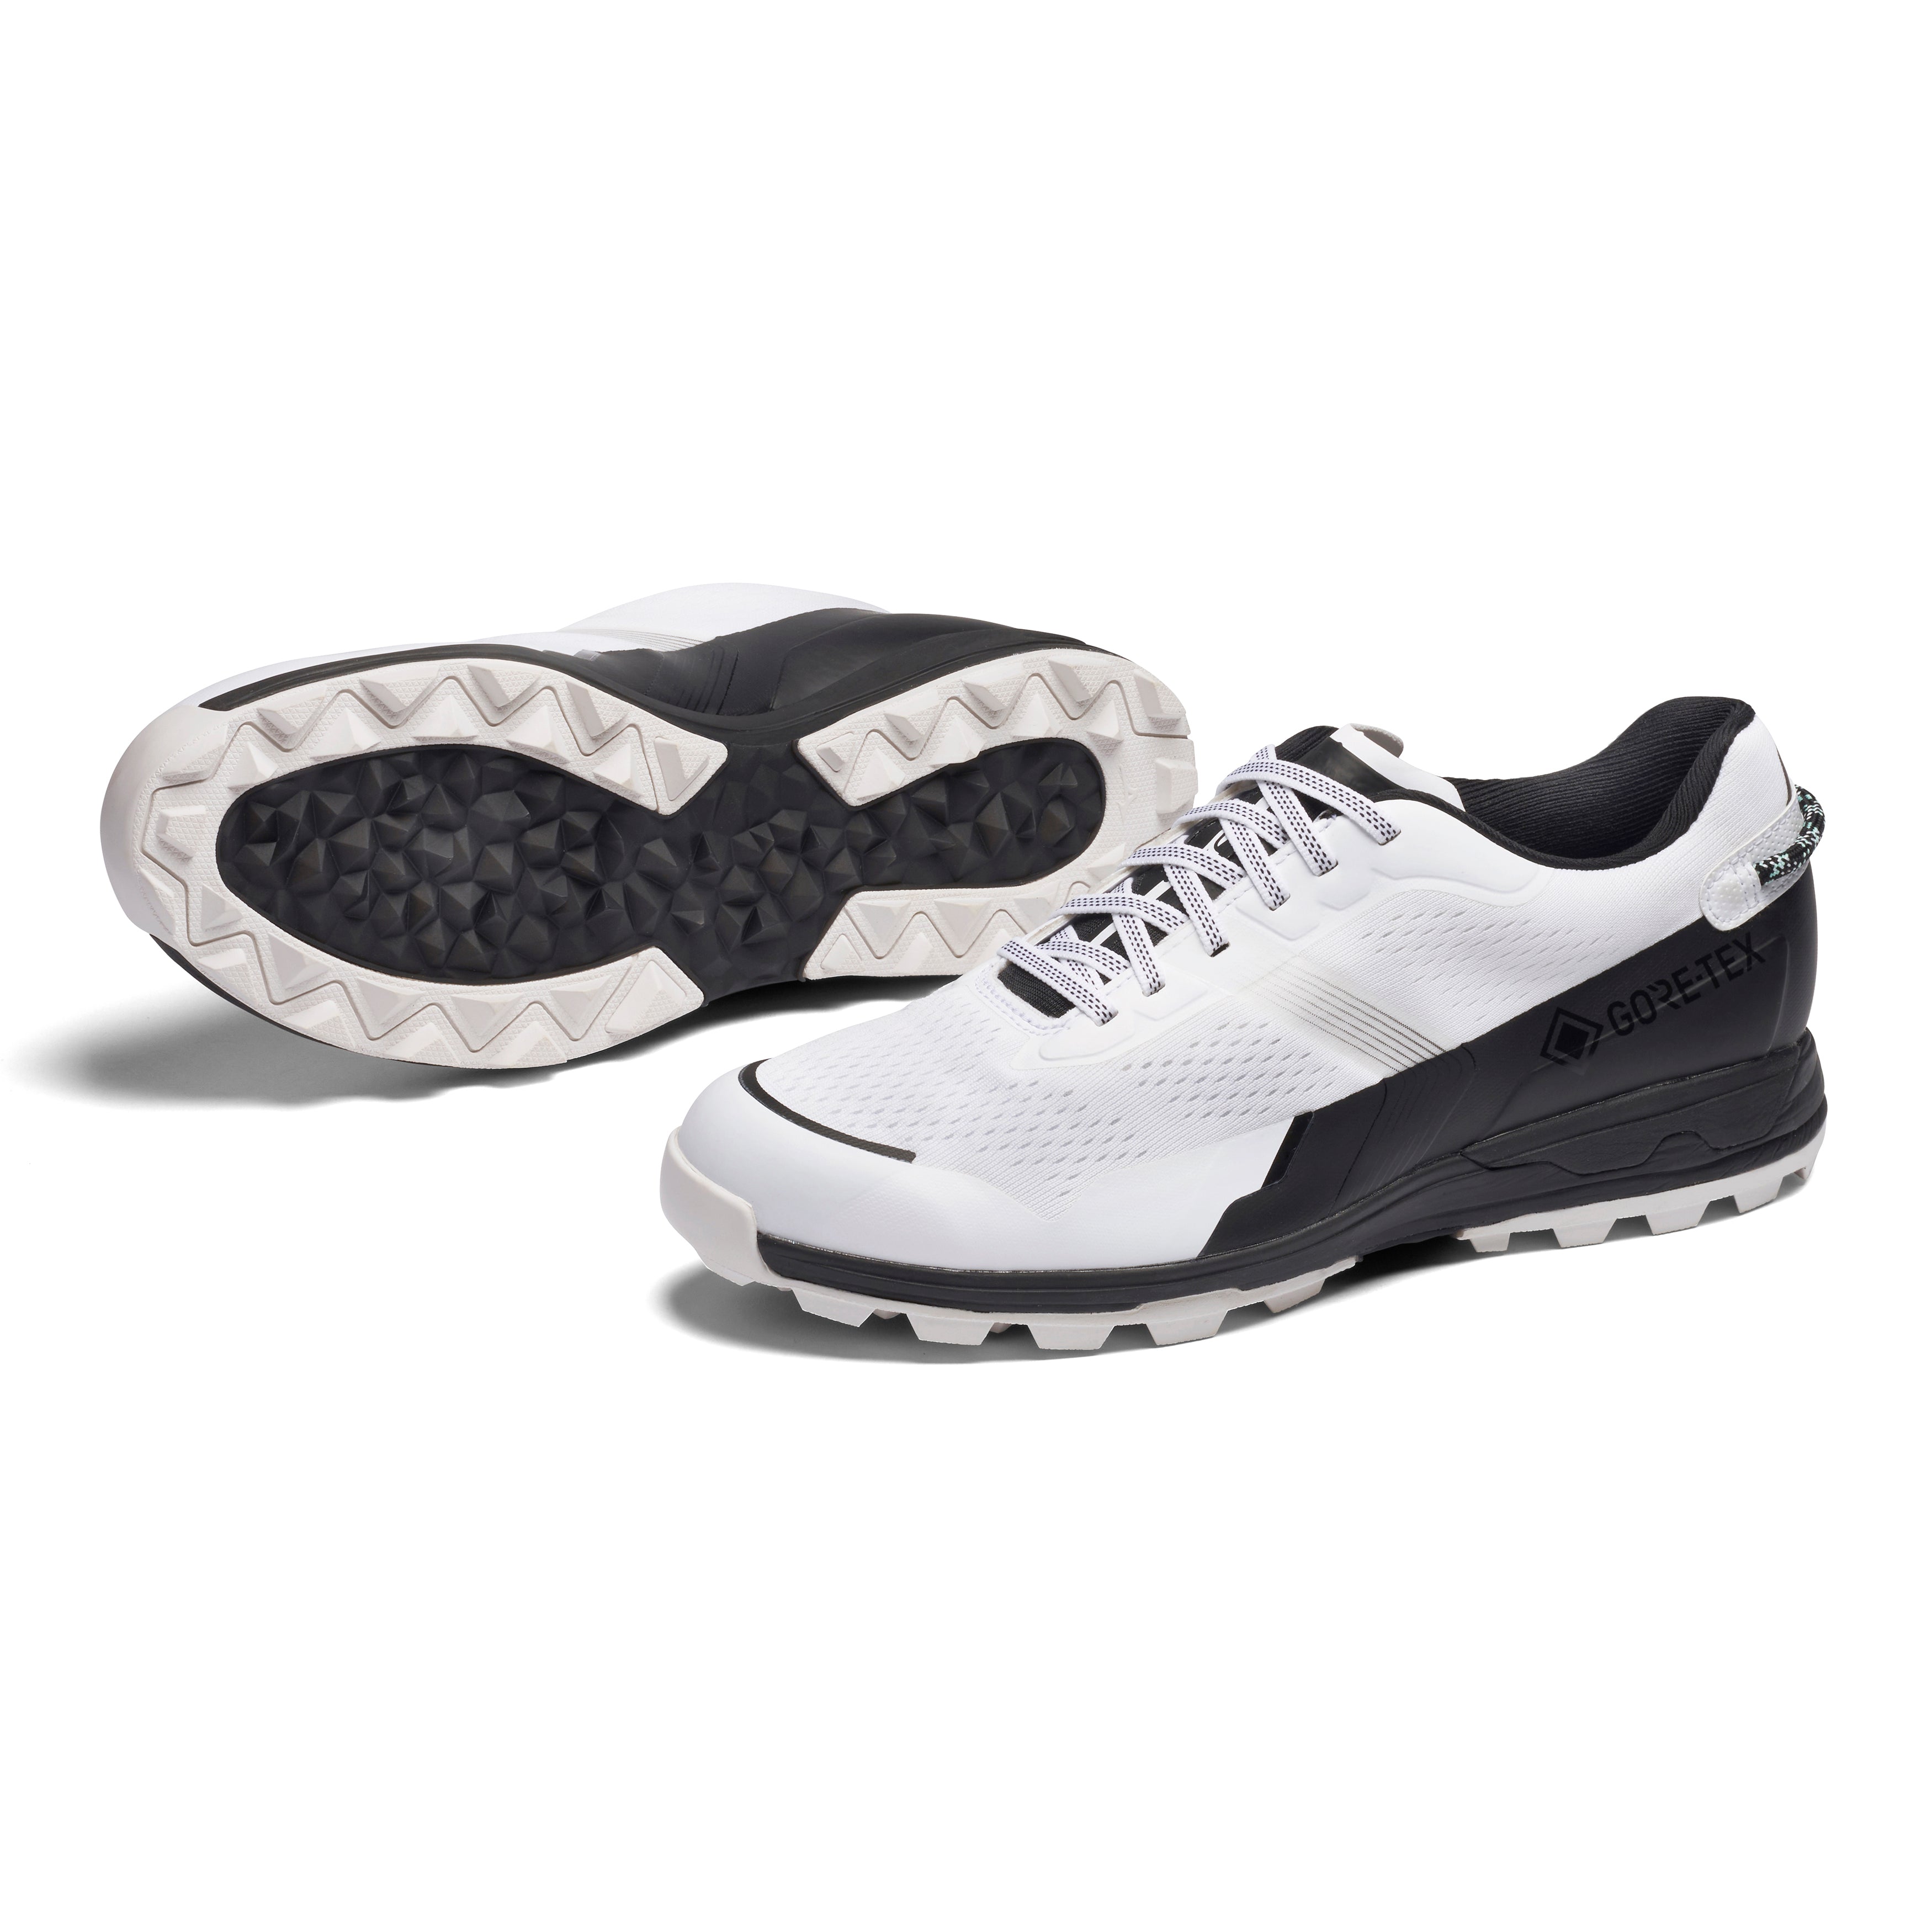 Mizuno MZU EN Golf Shoes 51GM2290 White Black 91 & Function18